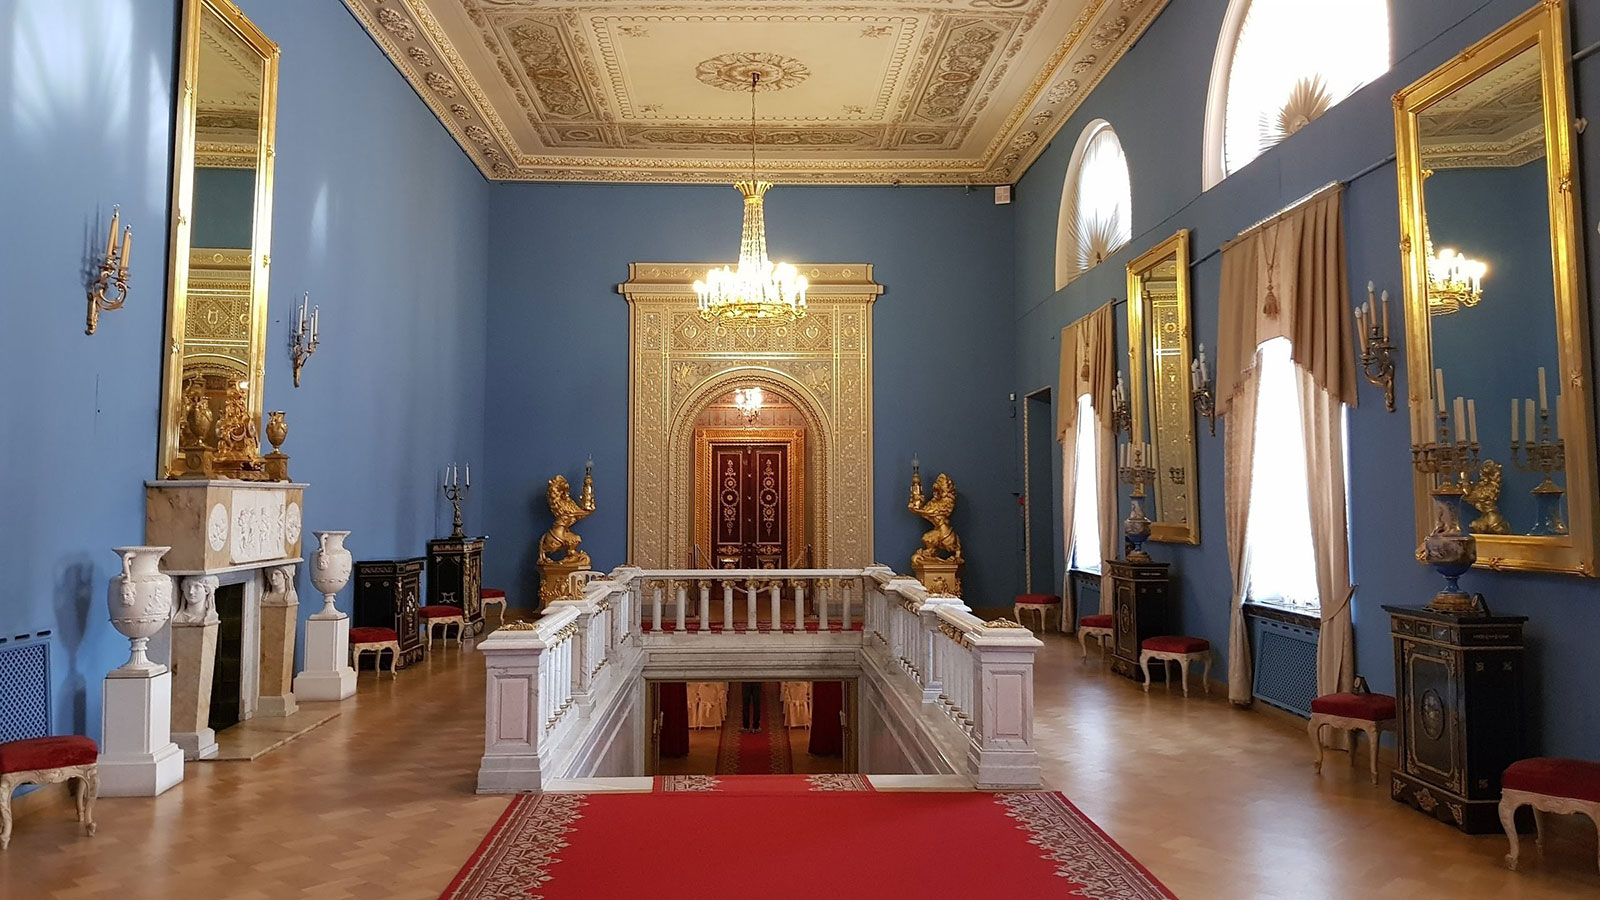 Римский зал в Юсуповском дворце на Мойке в Санкт-Петербурге